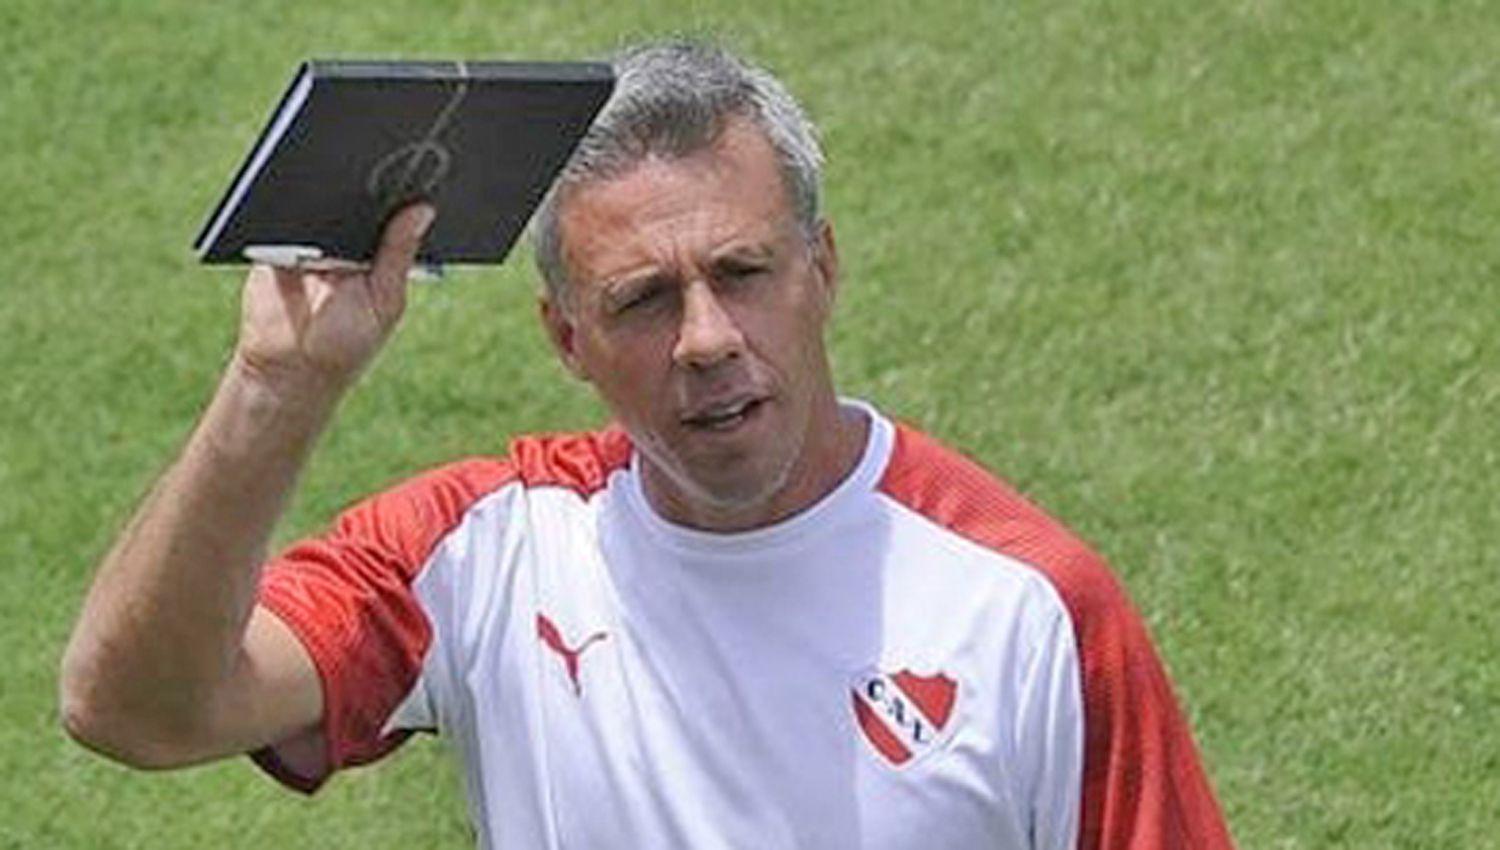 PANORAMA Lucas Pusineri todavía no logró consolidar un equipo en Independiente que hoy tendr� una parada difícil ante Vélez Sarsfield
